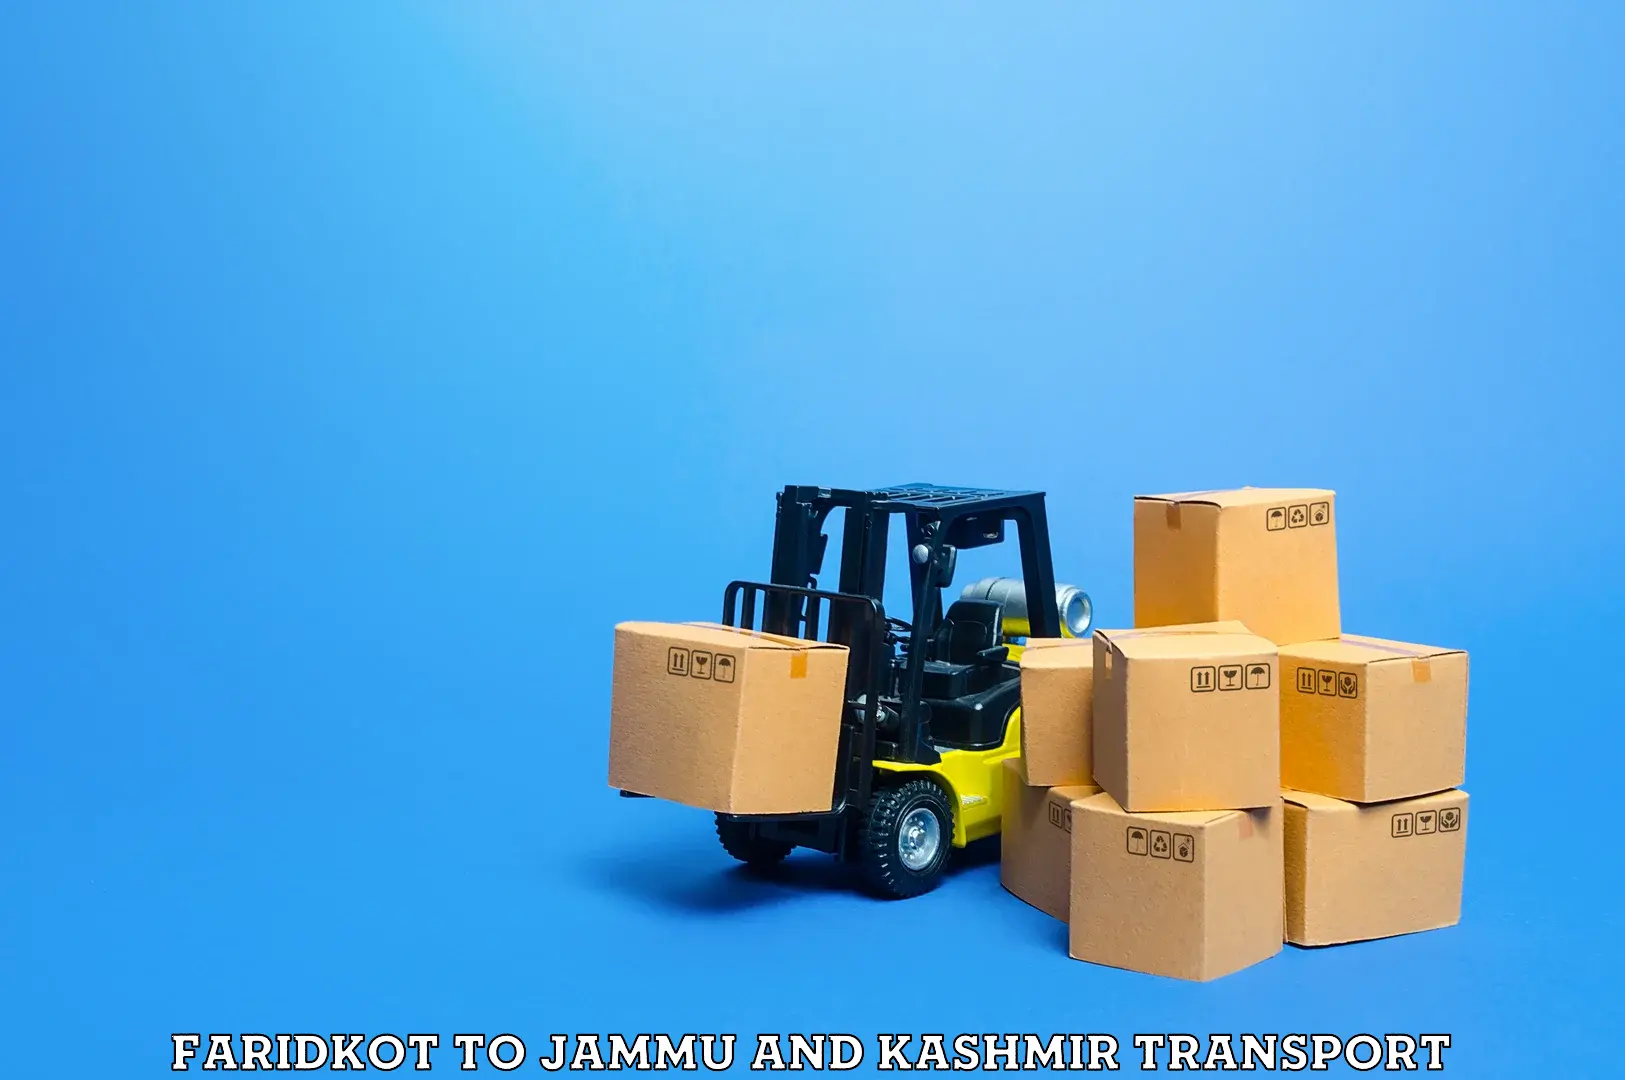 Air freight transport services Faridkot to Srinagar Kashmir